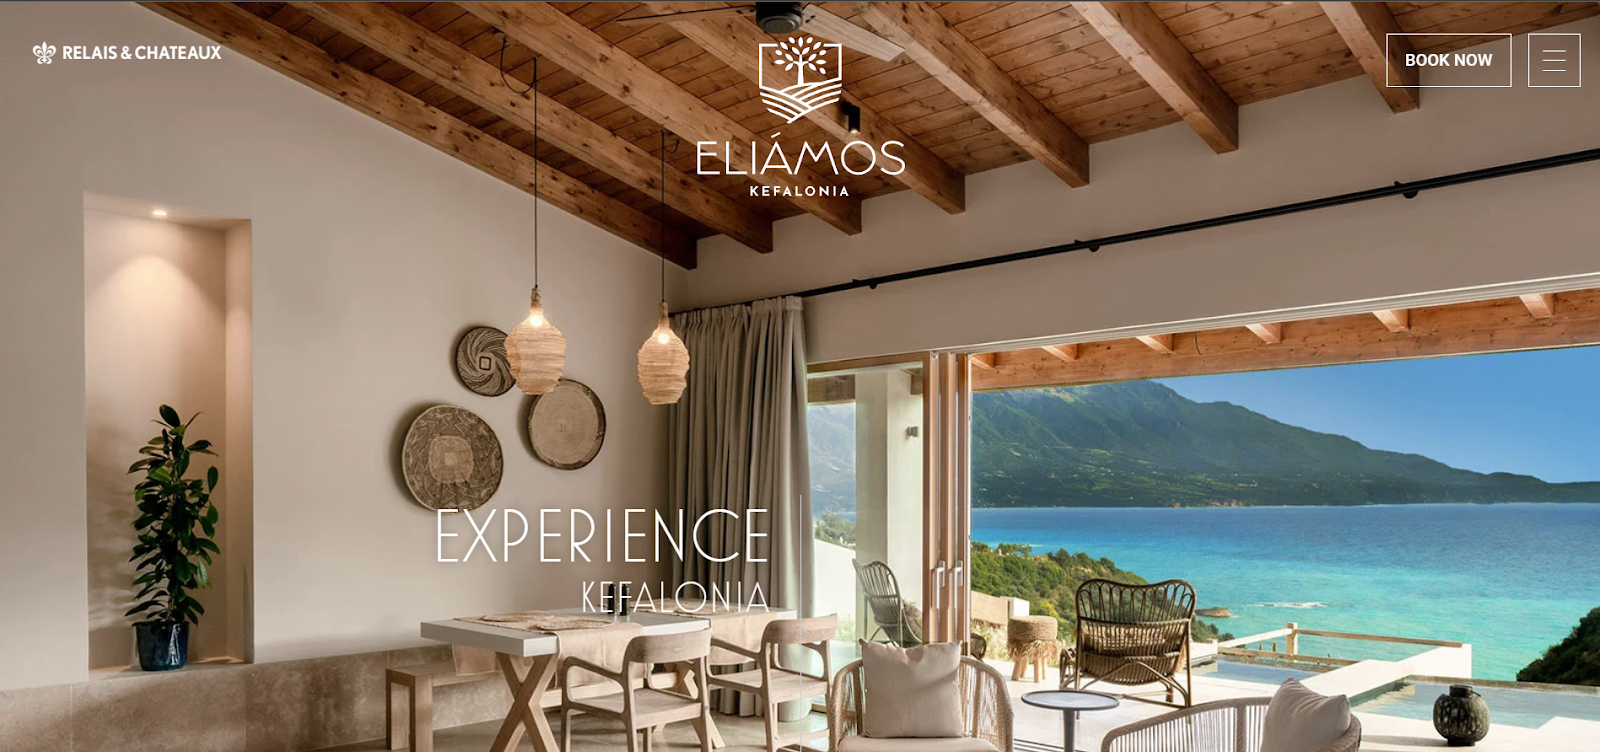 hotel website examples, Eliamos Villas